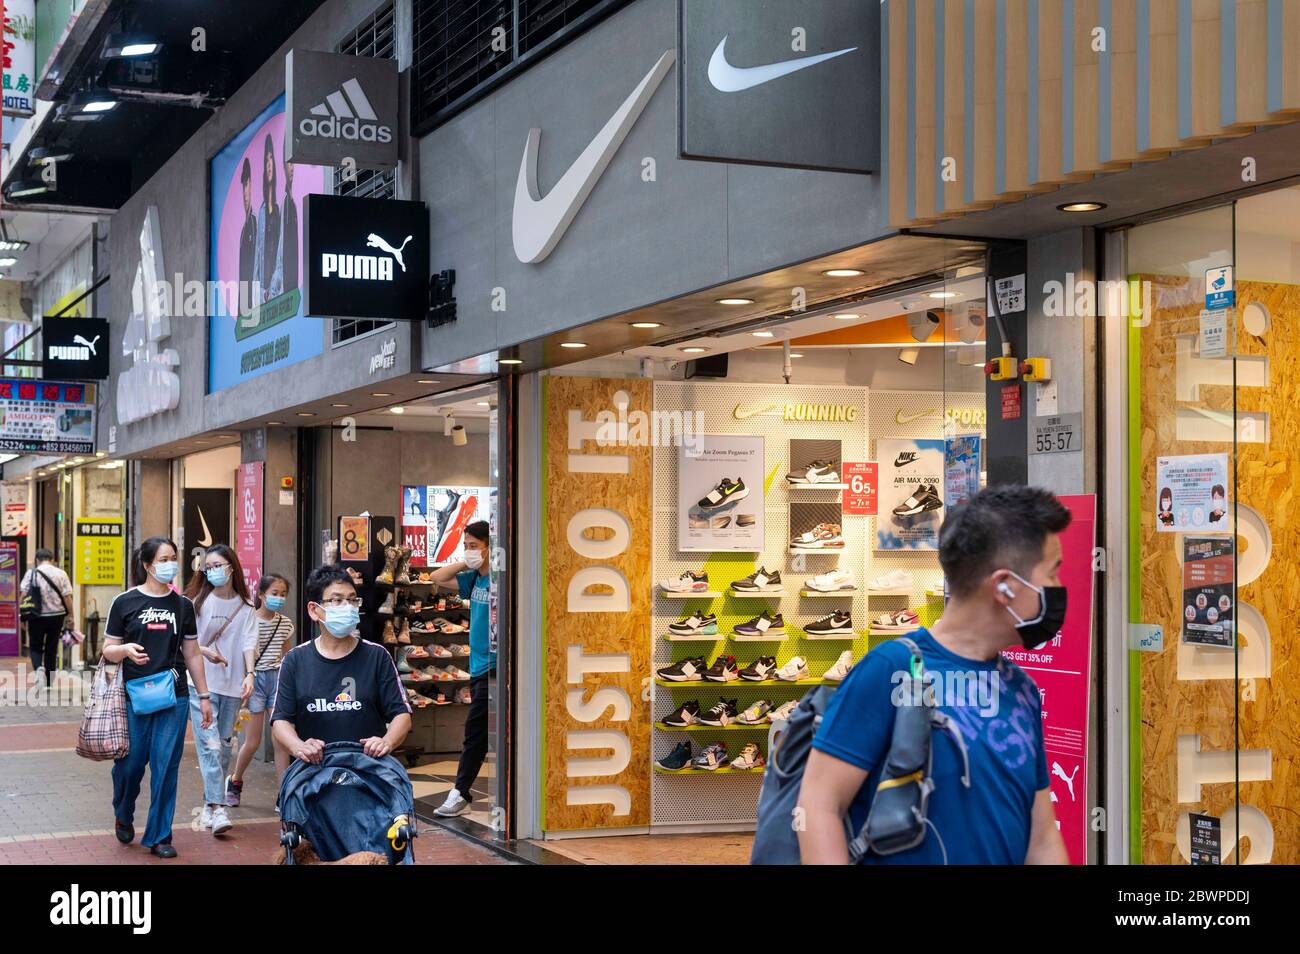 Hong Kong, China. 29 de mayo de 2020. Marcas multinacionales de ropa deportiva Adidas y logotipos Nike vistos en una tienda en Hong Kong. Crédito: Chukrut/SOPA Imágenes/ZUMA Wire/Alamy Live News Fotografía